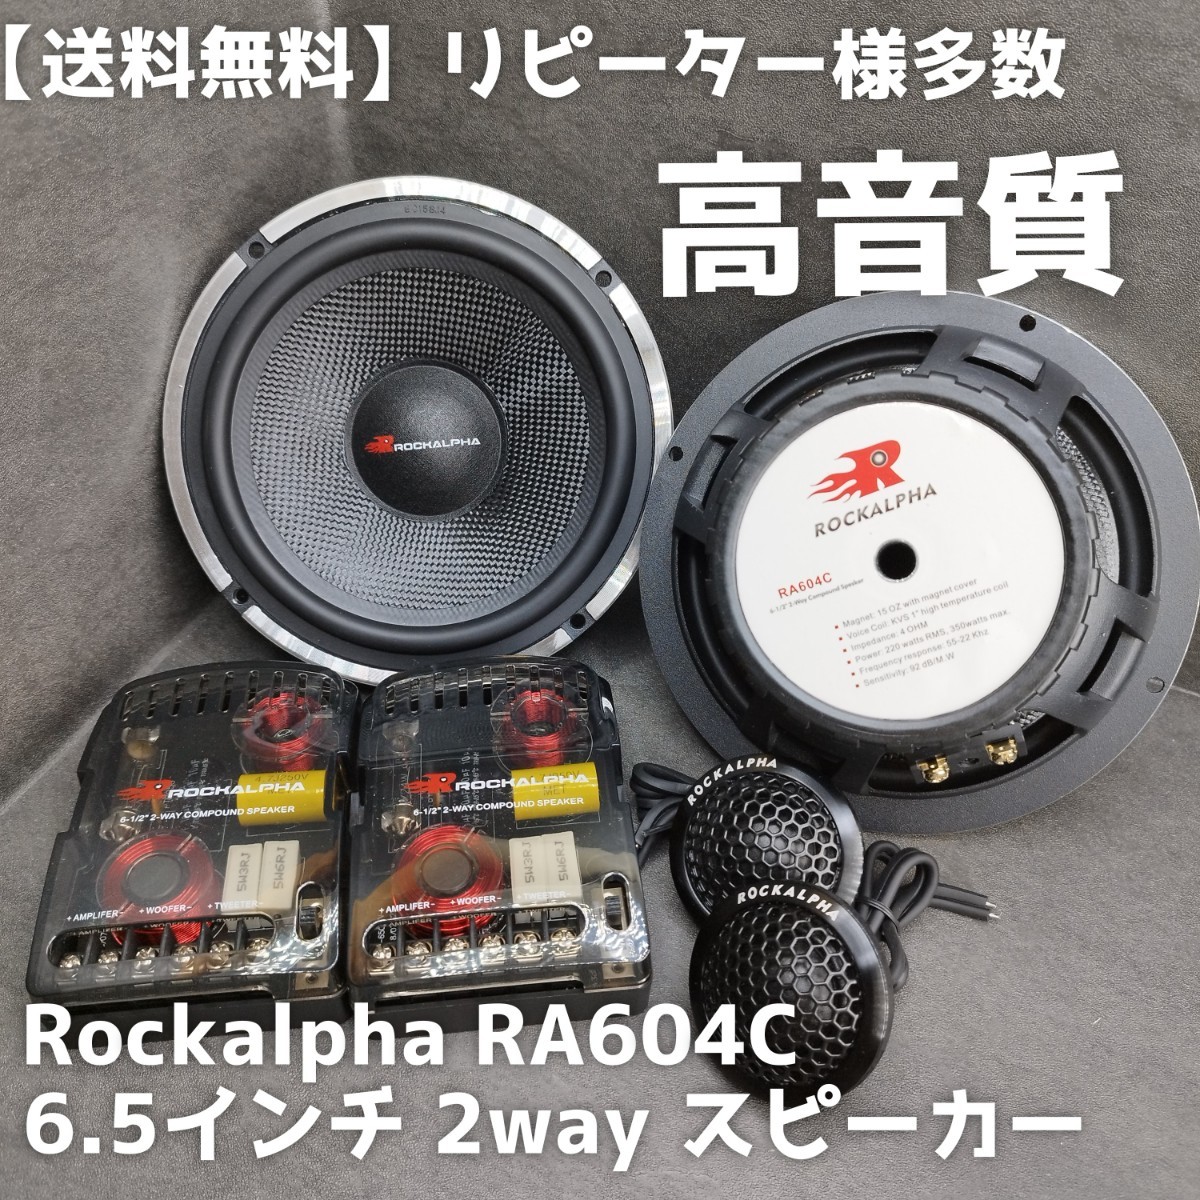 [ бесплатная доставка ] высокого уровня [ высококачественный звук ]Rockalpha RA604C 6.5 дюймовый 17cm 2way раздельные динамики Car Audio высокочастотный динамик сабвуфер 